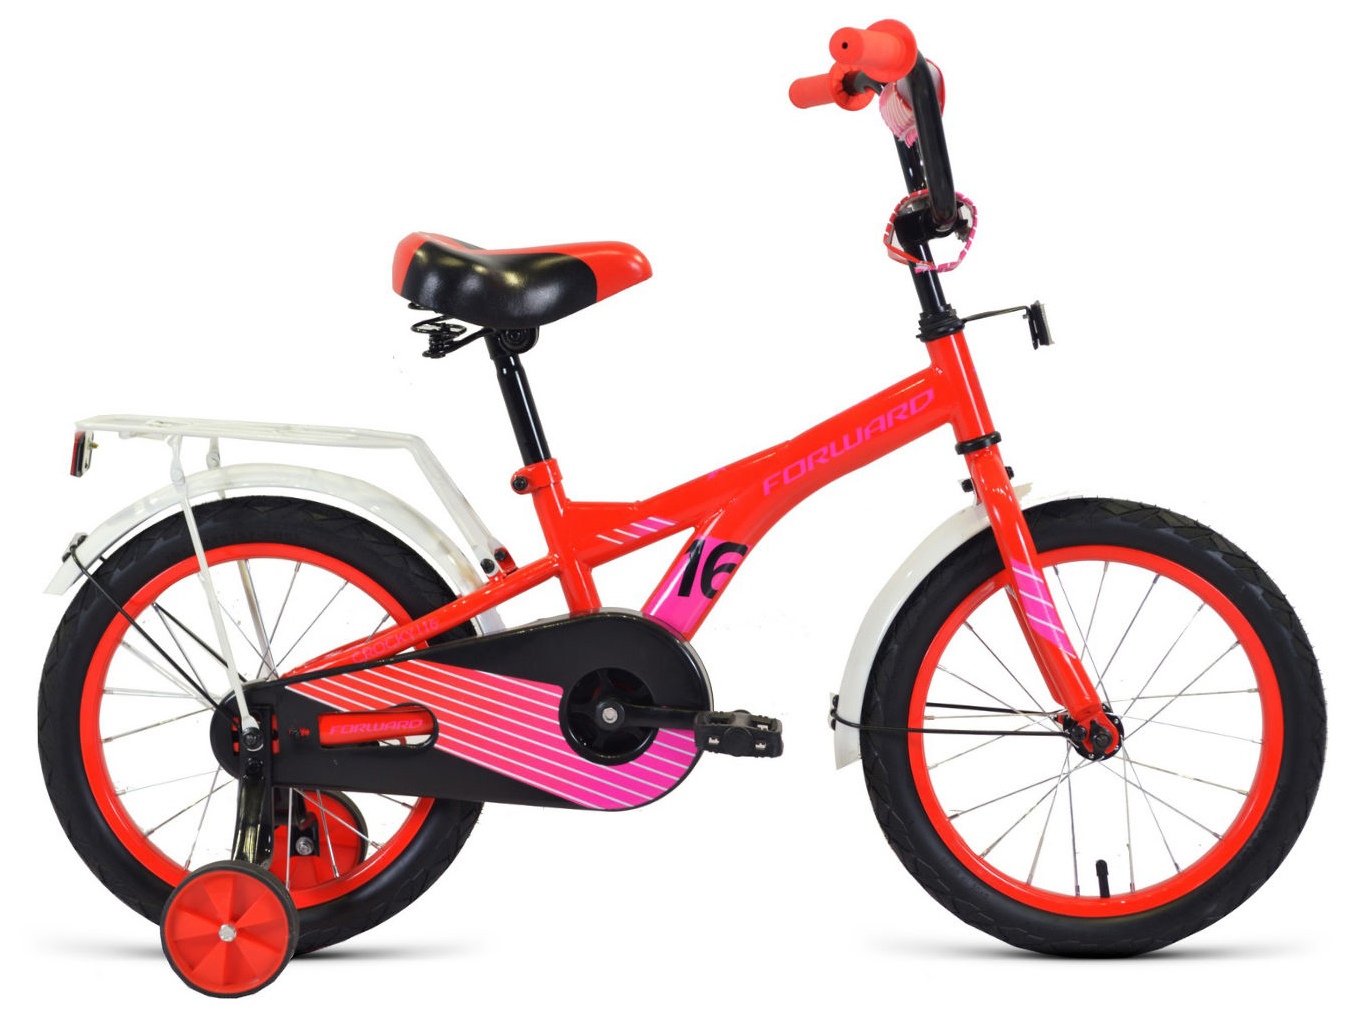  Отзывы о Детском велосипеде Forward Crocky 16 2020